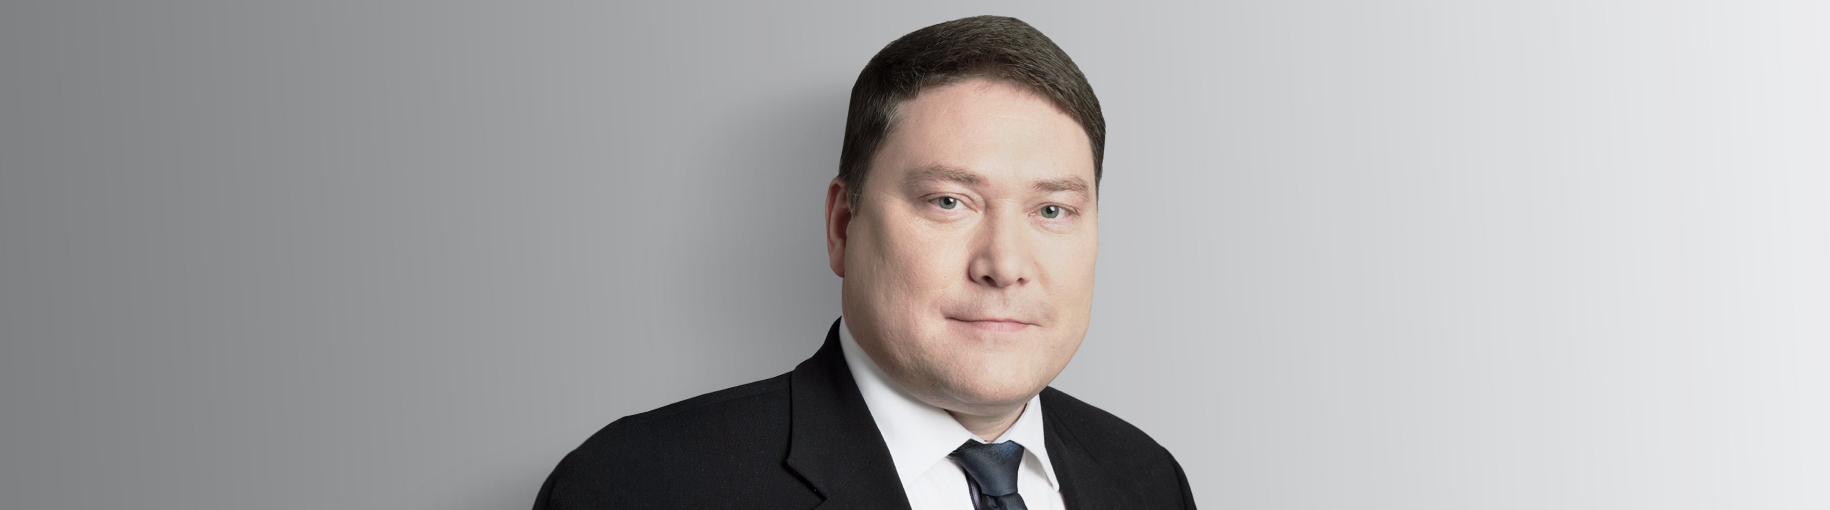 Олег Минаев: «Мы нацелены быть банком первого выбора» 